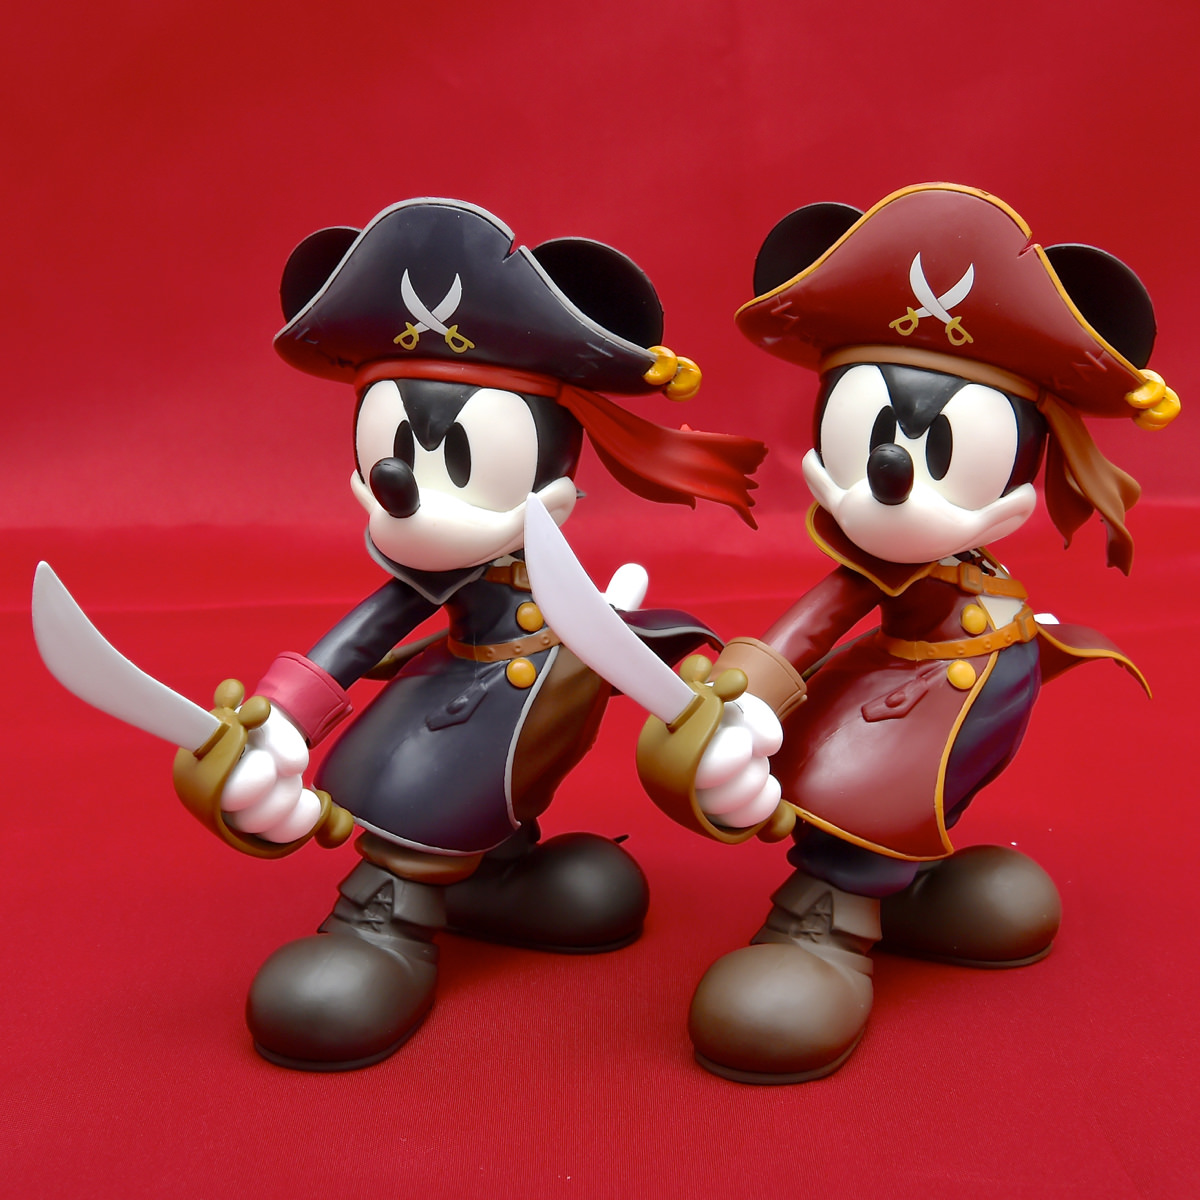 バンプレスト「ディズニーキャラクターズ DXF MICKEY MOUSE-Pirate style-」集合